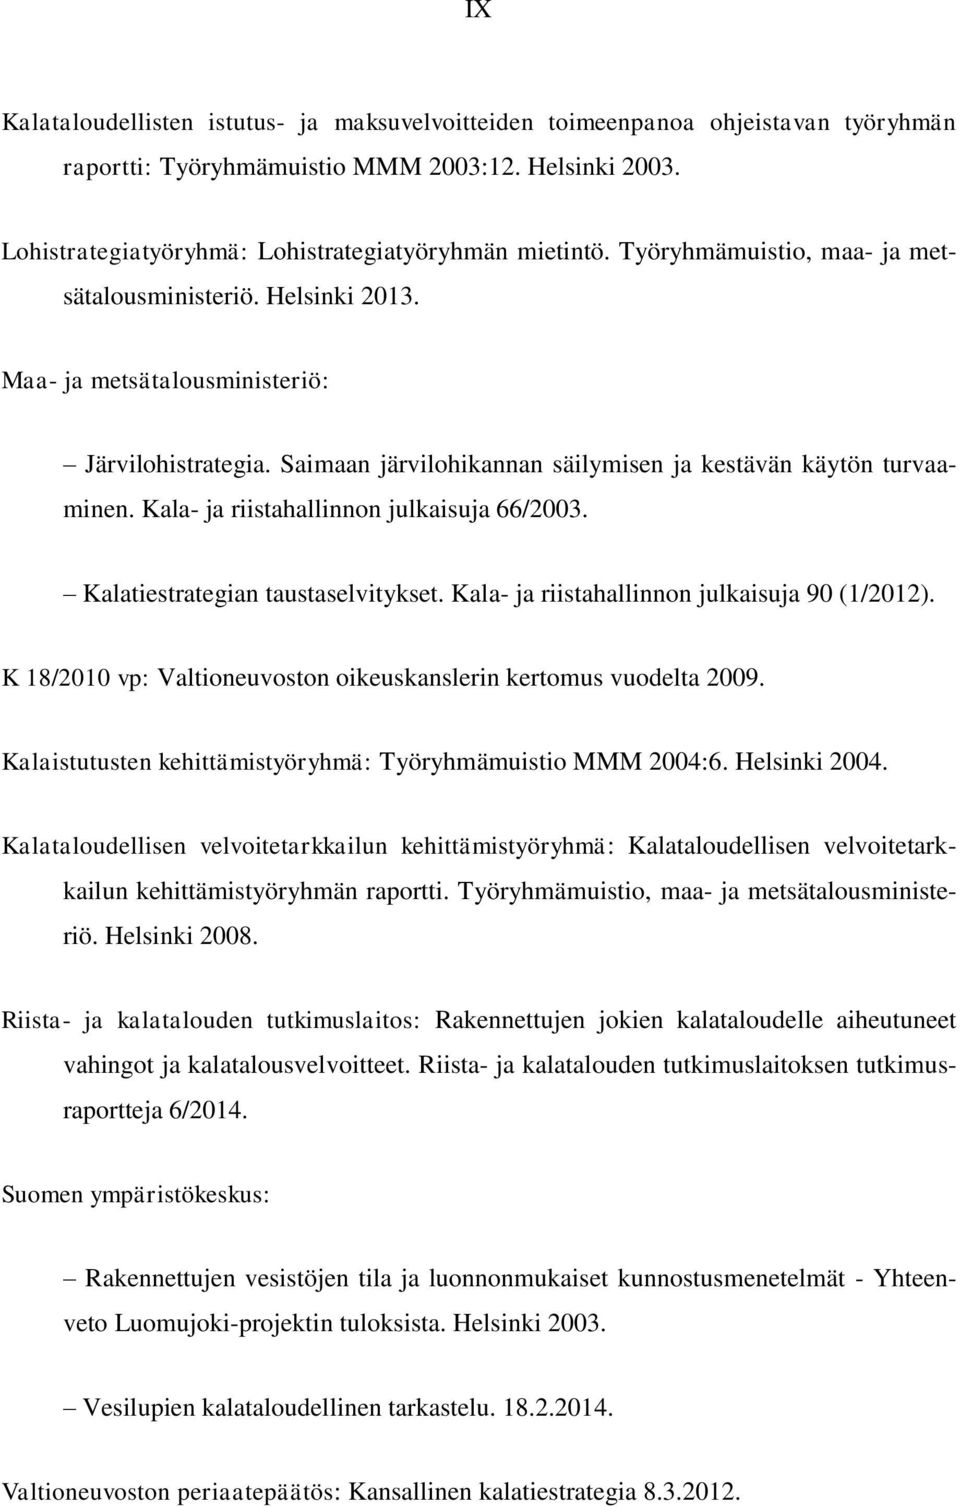 Kala- ja riistahallinnon julkaisuja 66/2003. Kalatiestrategian taustaselvitykset. Kala- ja riistahallinnon julkaisuja 90 (1/2012). K 18/2010 vp: Valtioneuvoston oikeuskanslerin kertomus vuodelta 2009.